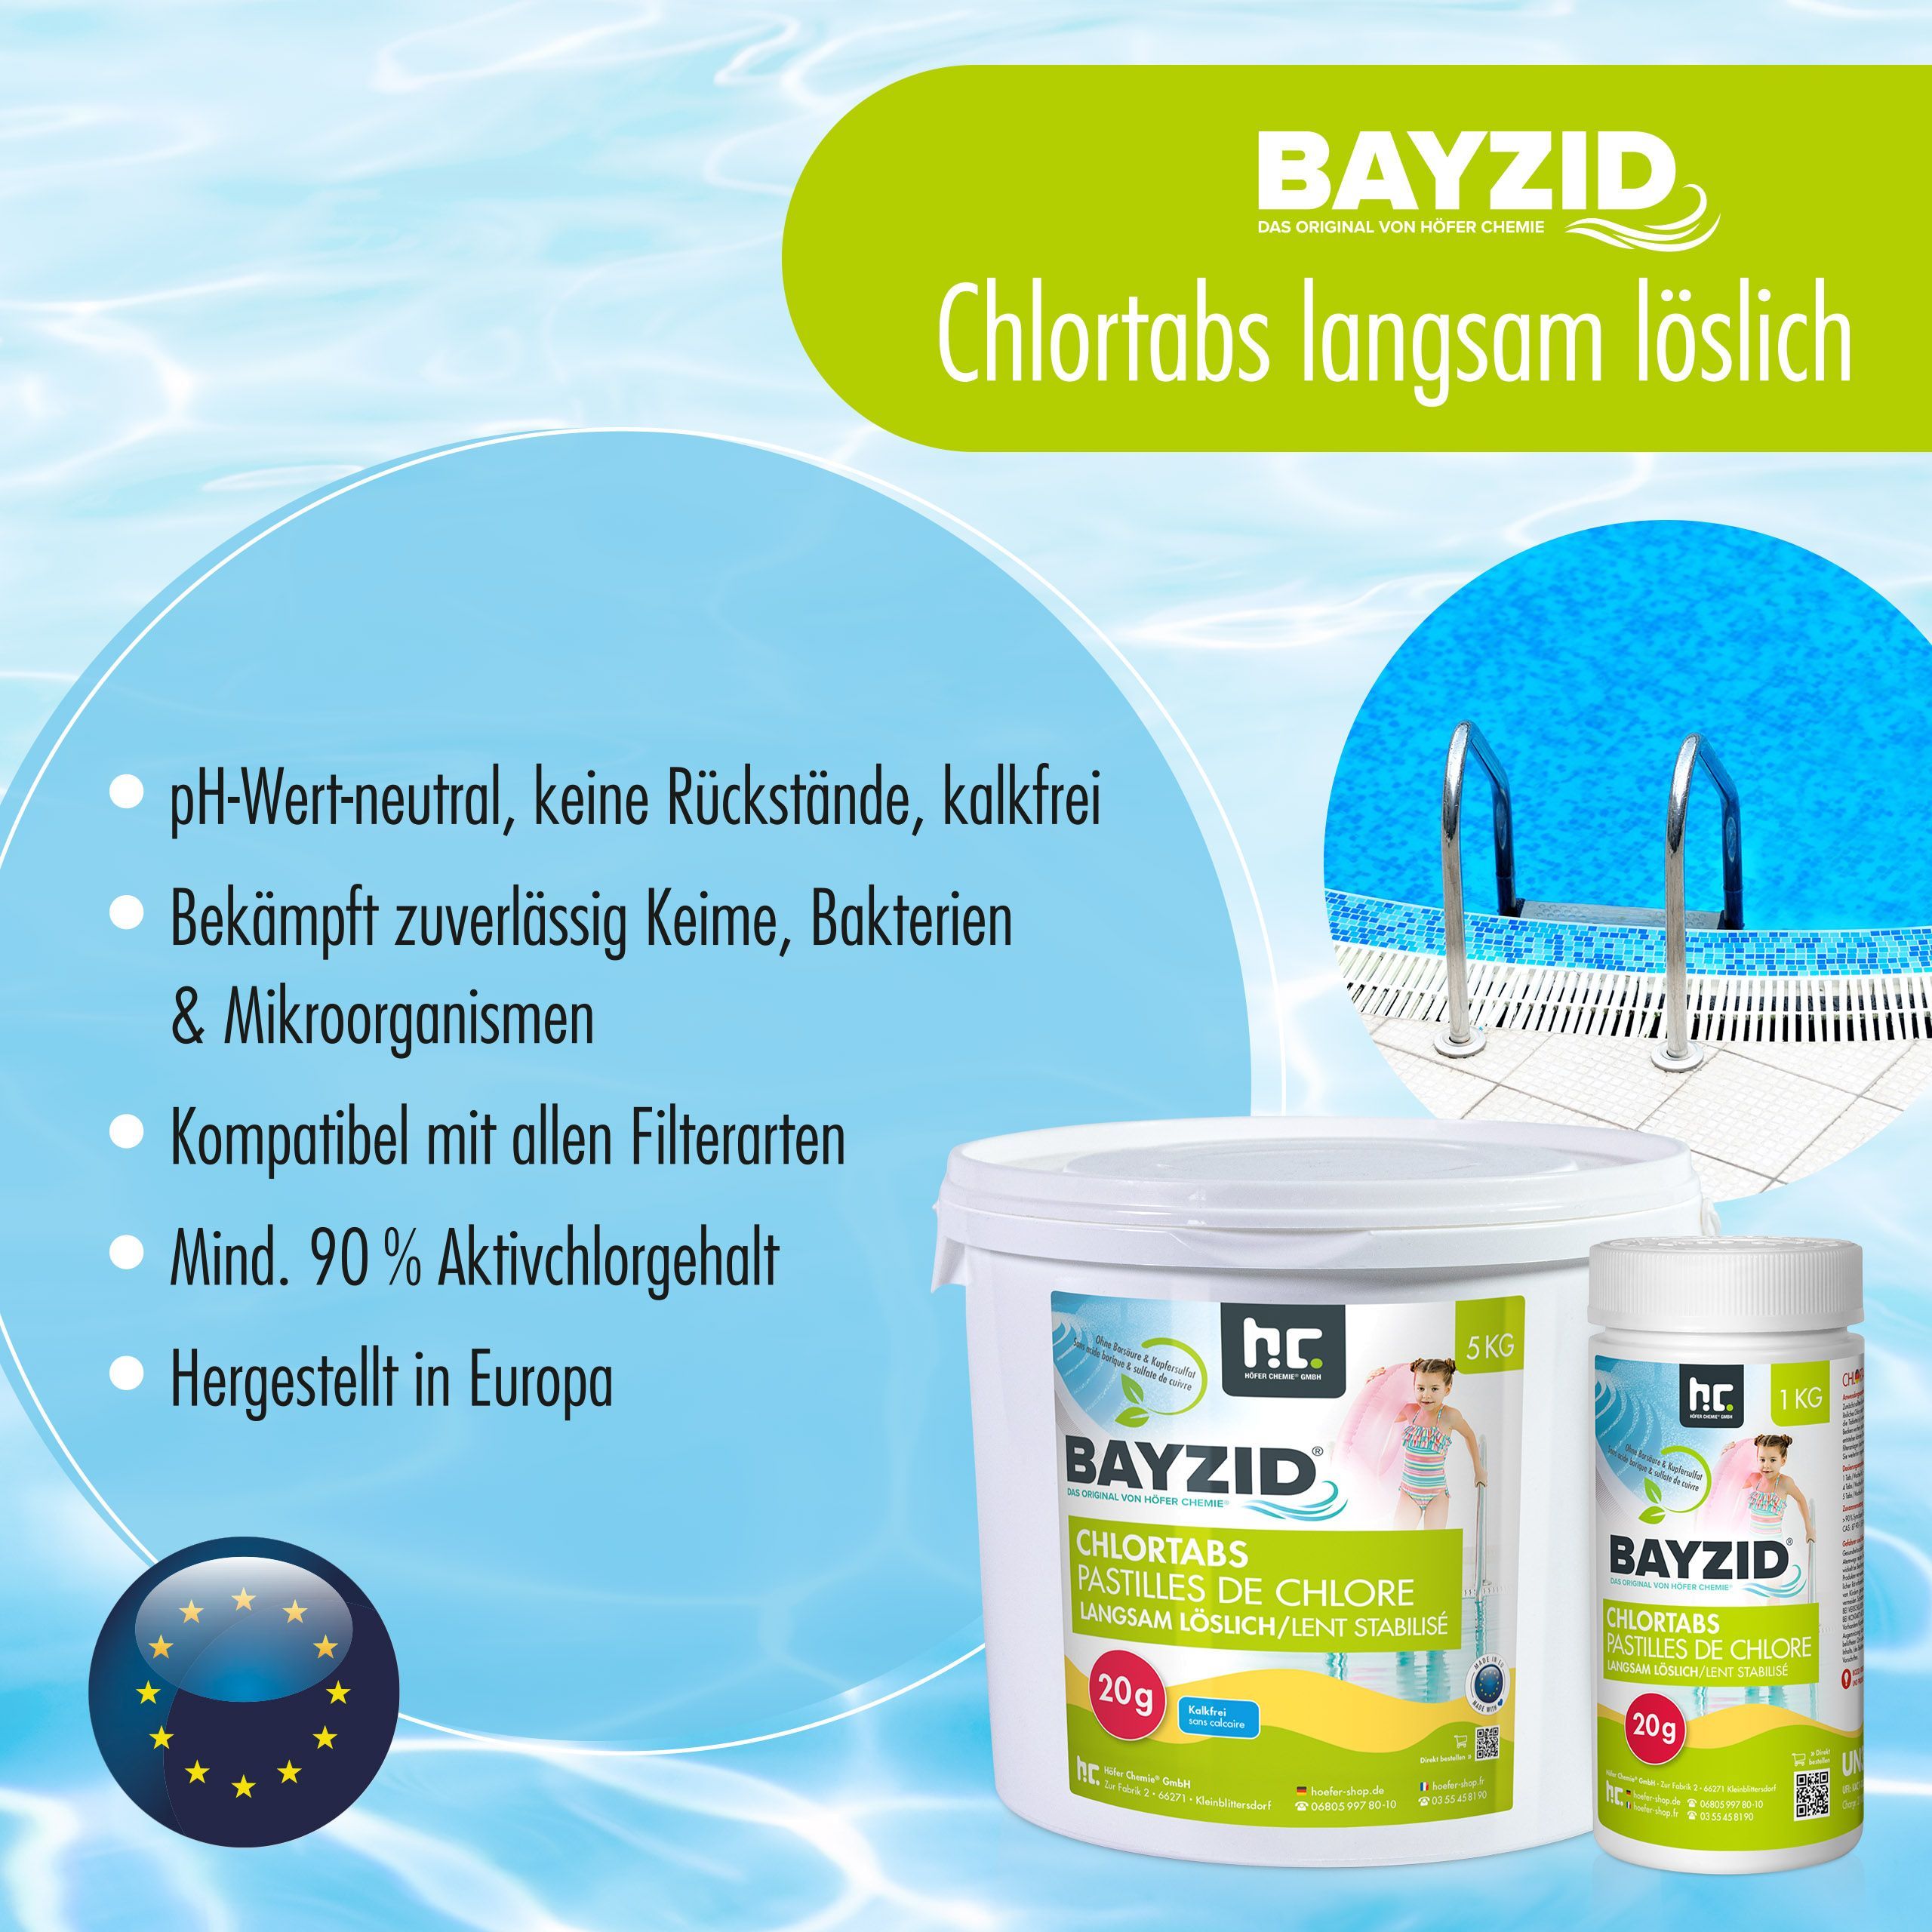 1kg Bayzid® Pastilles de chlore lent (20g)